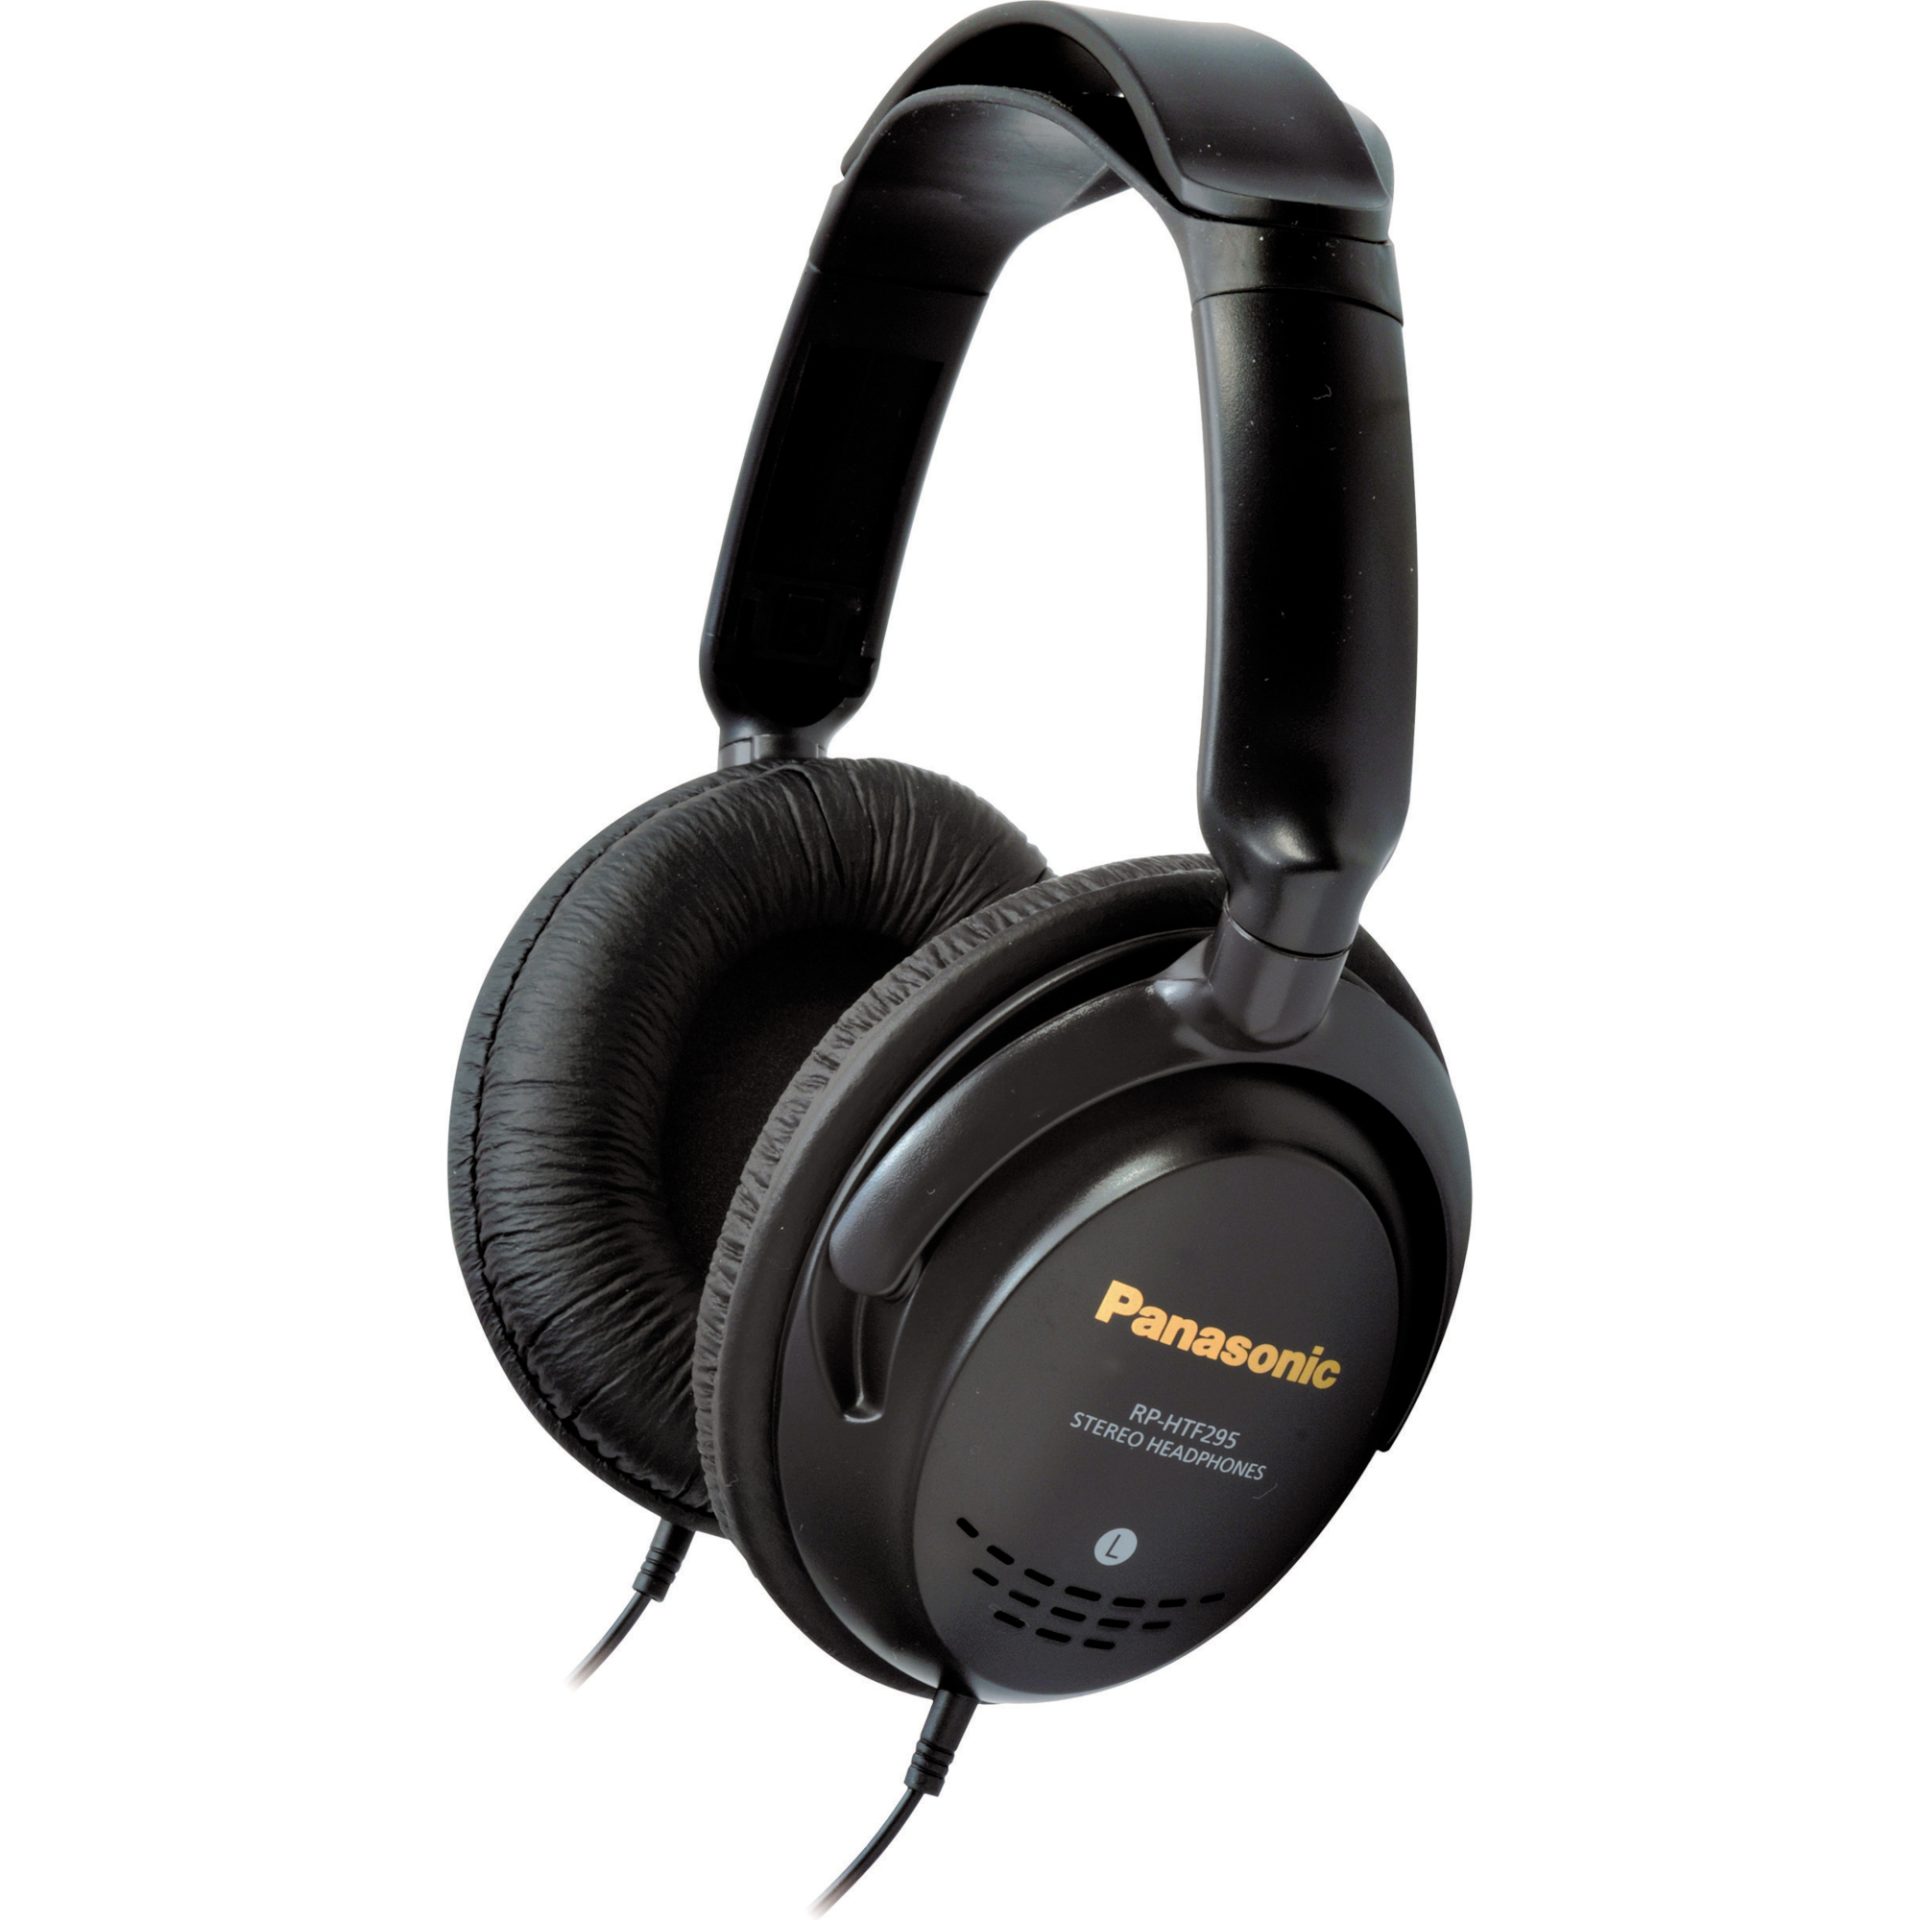 Panasonic RP-HTF295 monitorová sluchátka (dvojitá hlavová opěrka, velké 40mm měniče, pohodlné krytky náušníků), černá